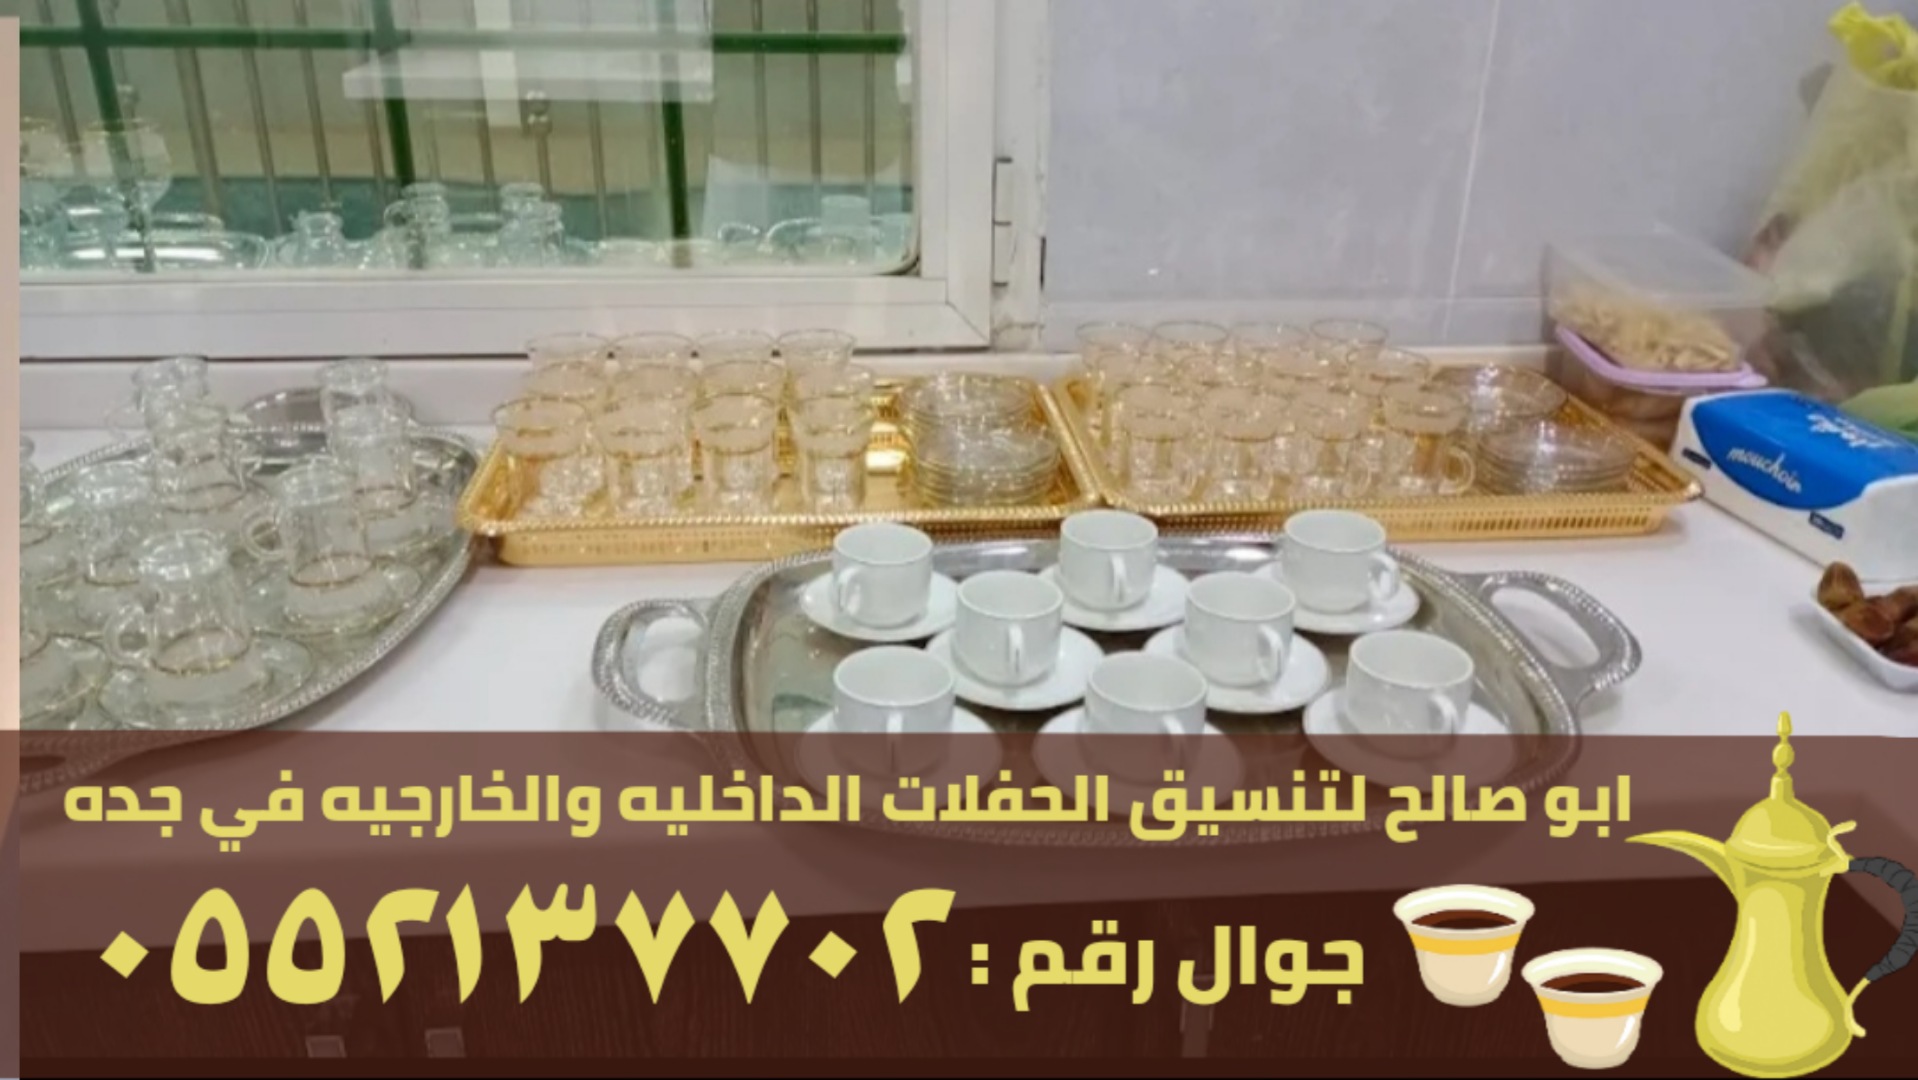 صبابين ومباشرين قهوة في جدة , 0552137702 P_2371njiat6